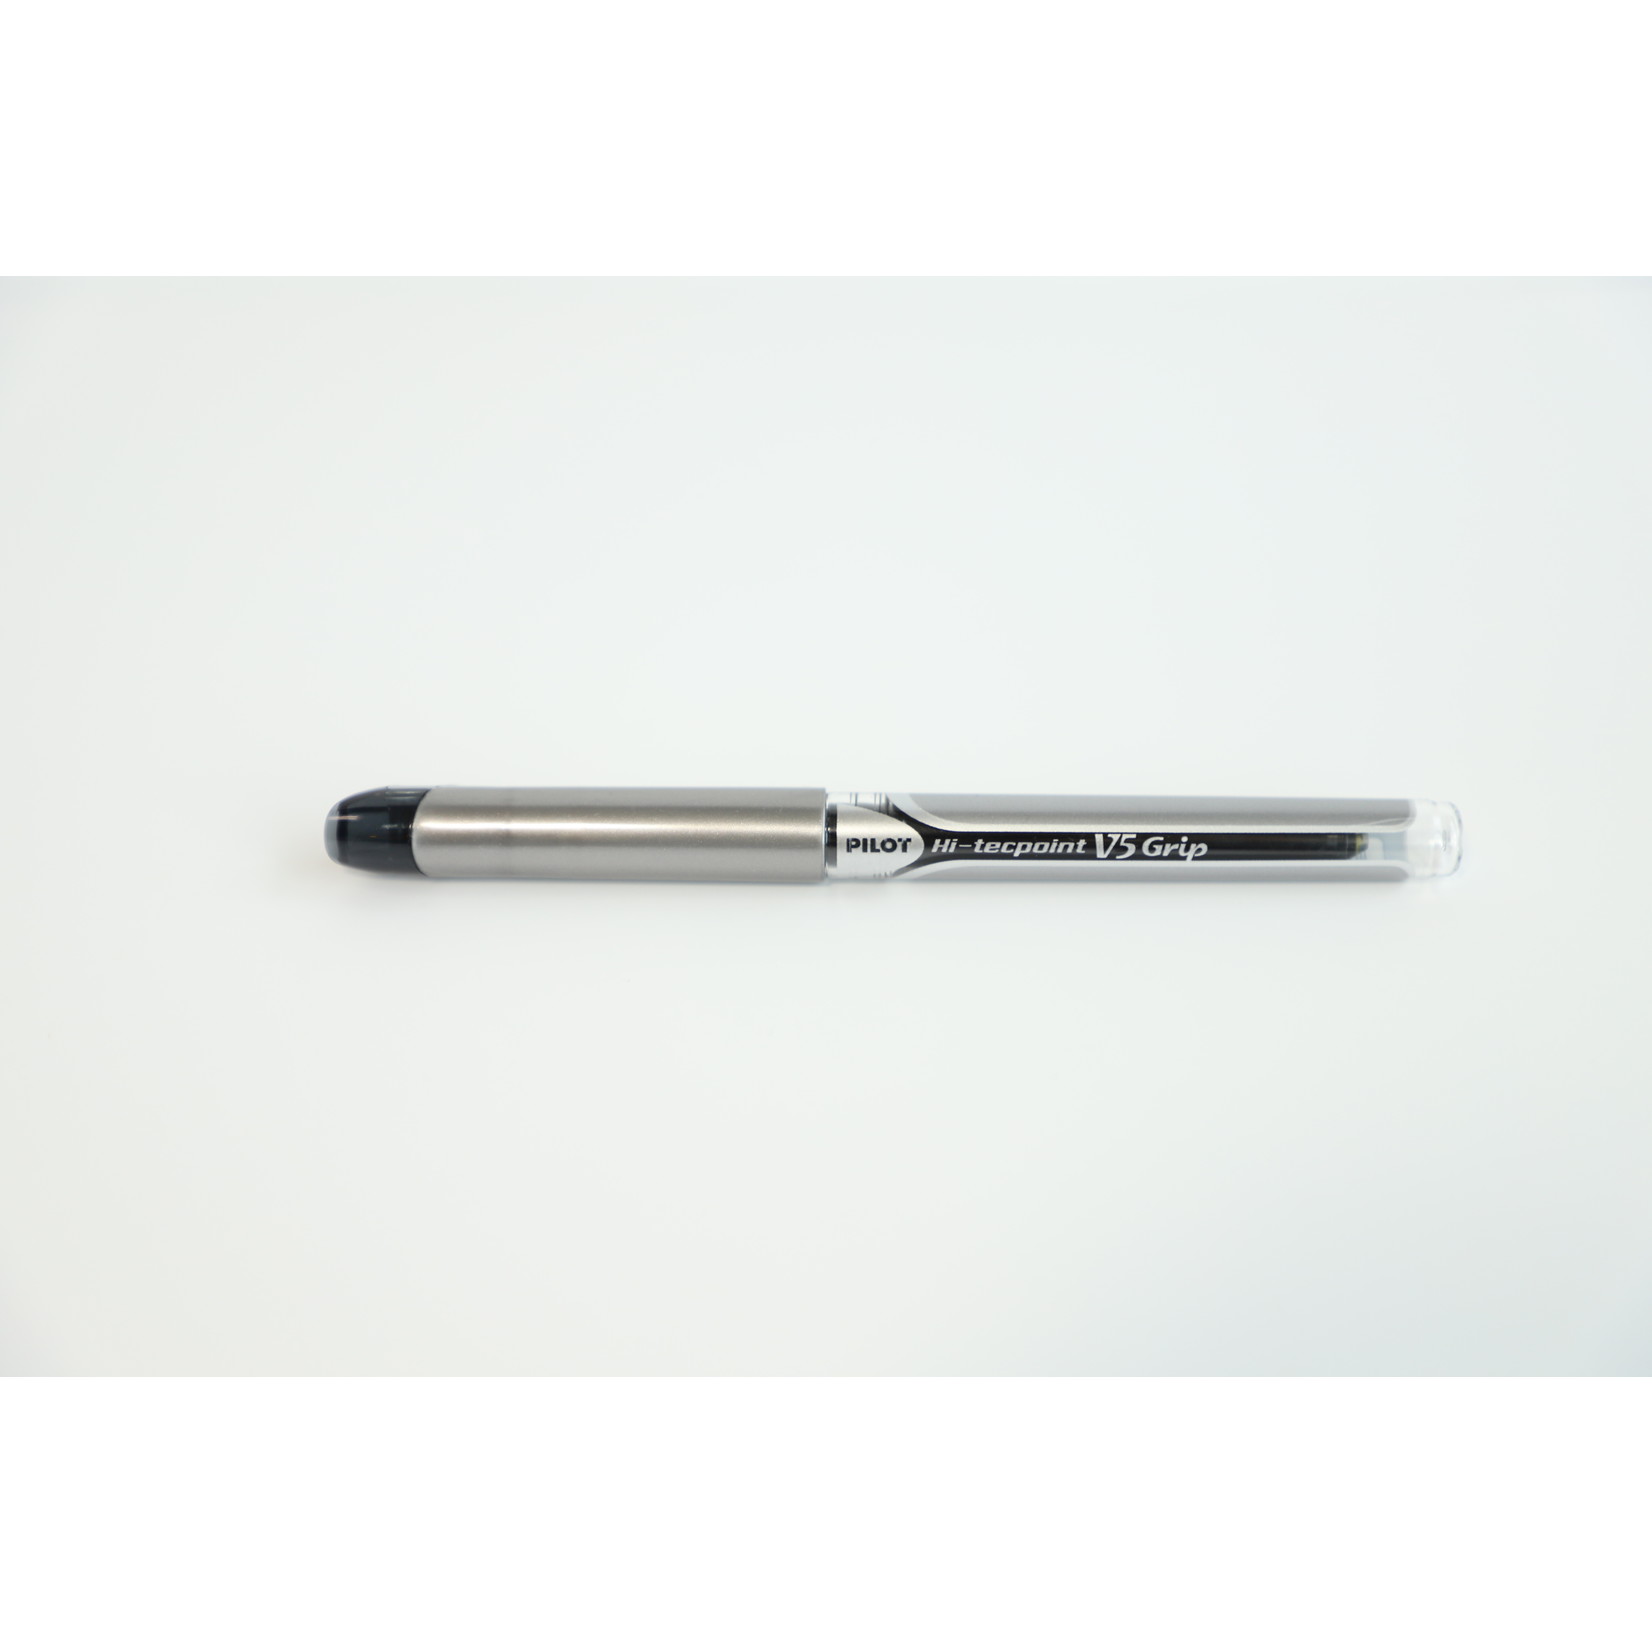 Hi-Tecpoint V5 Pen